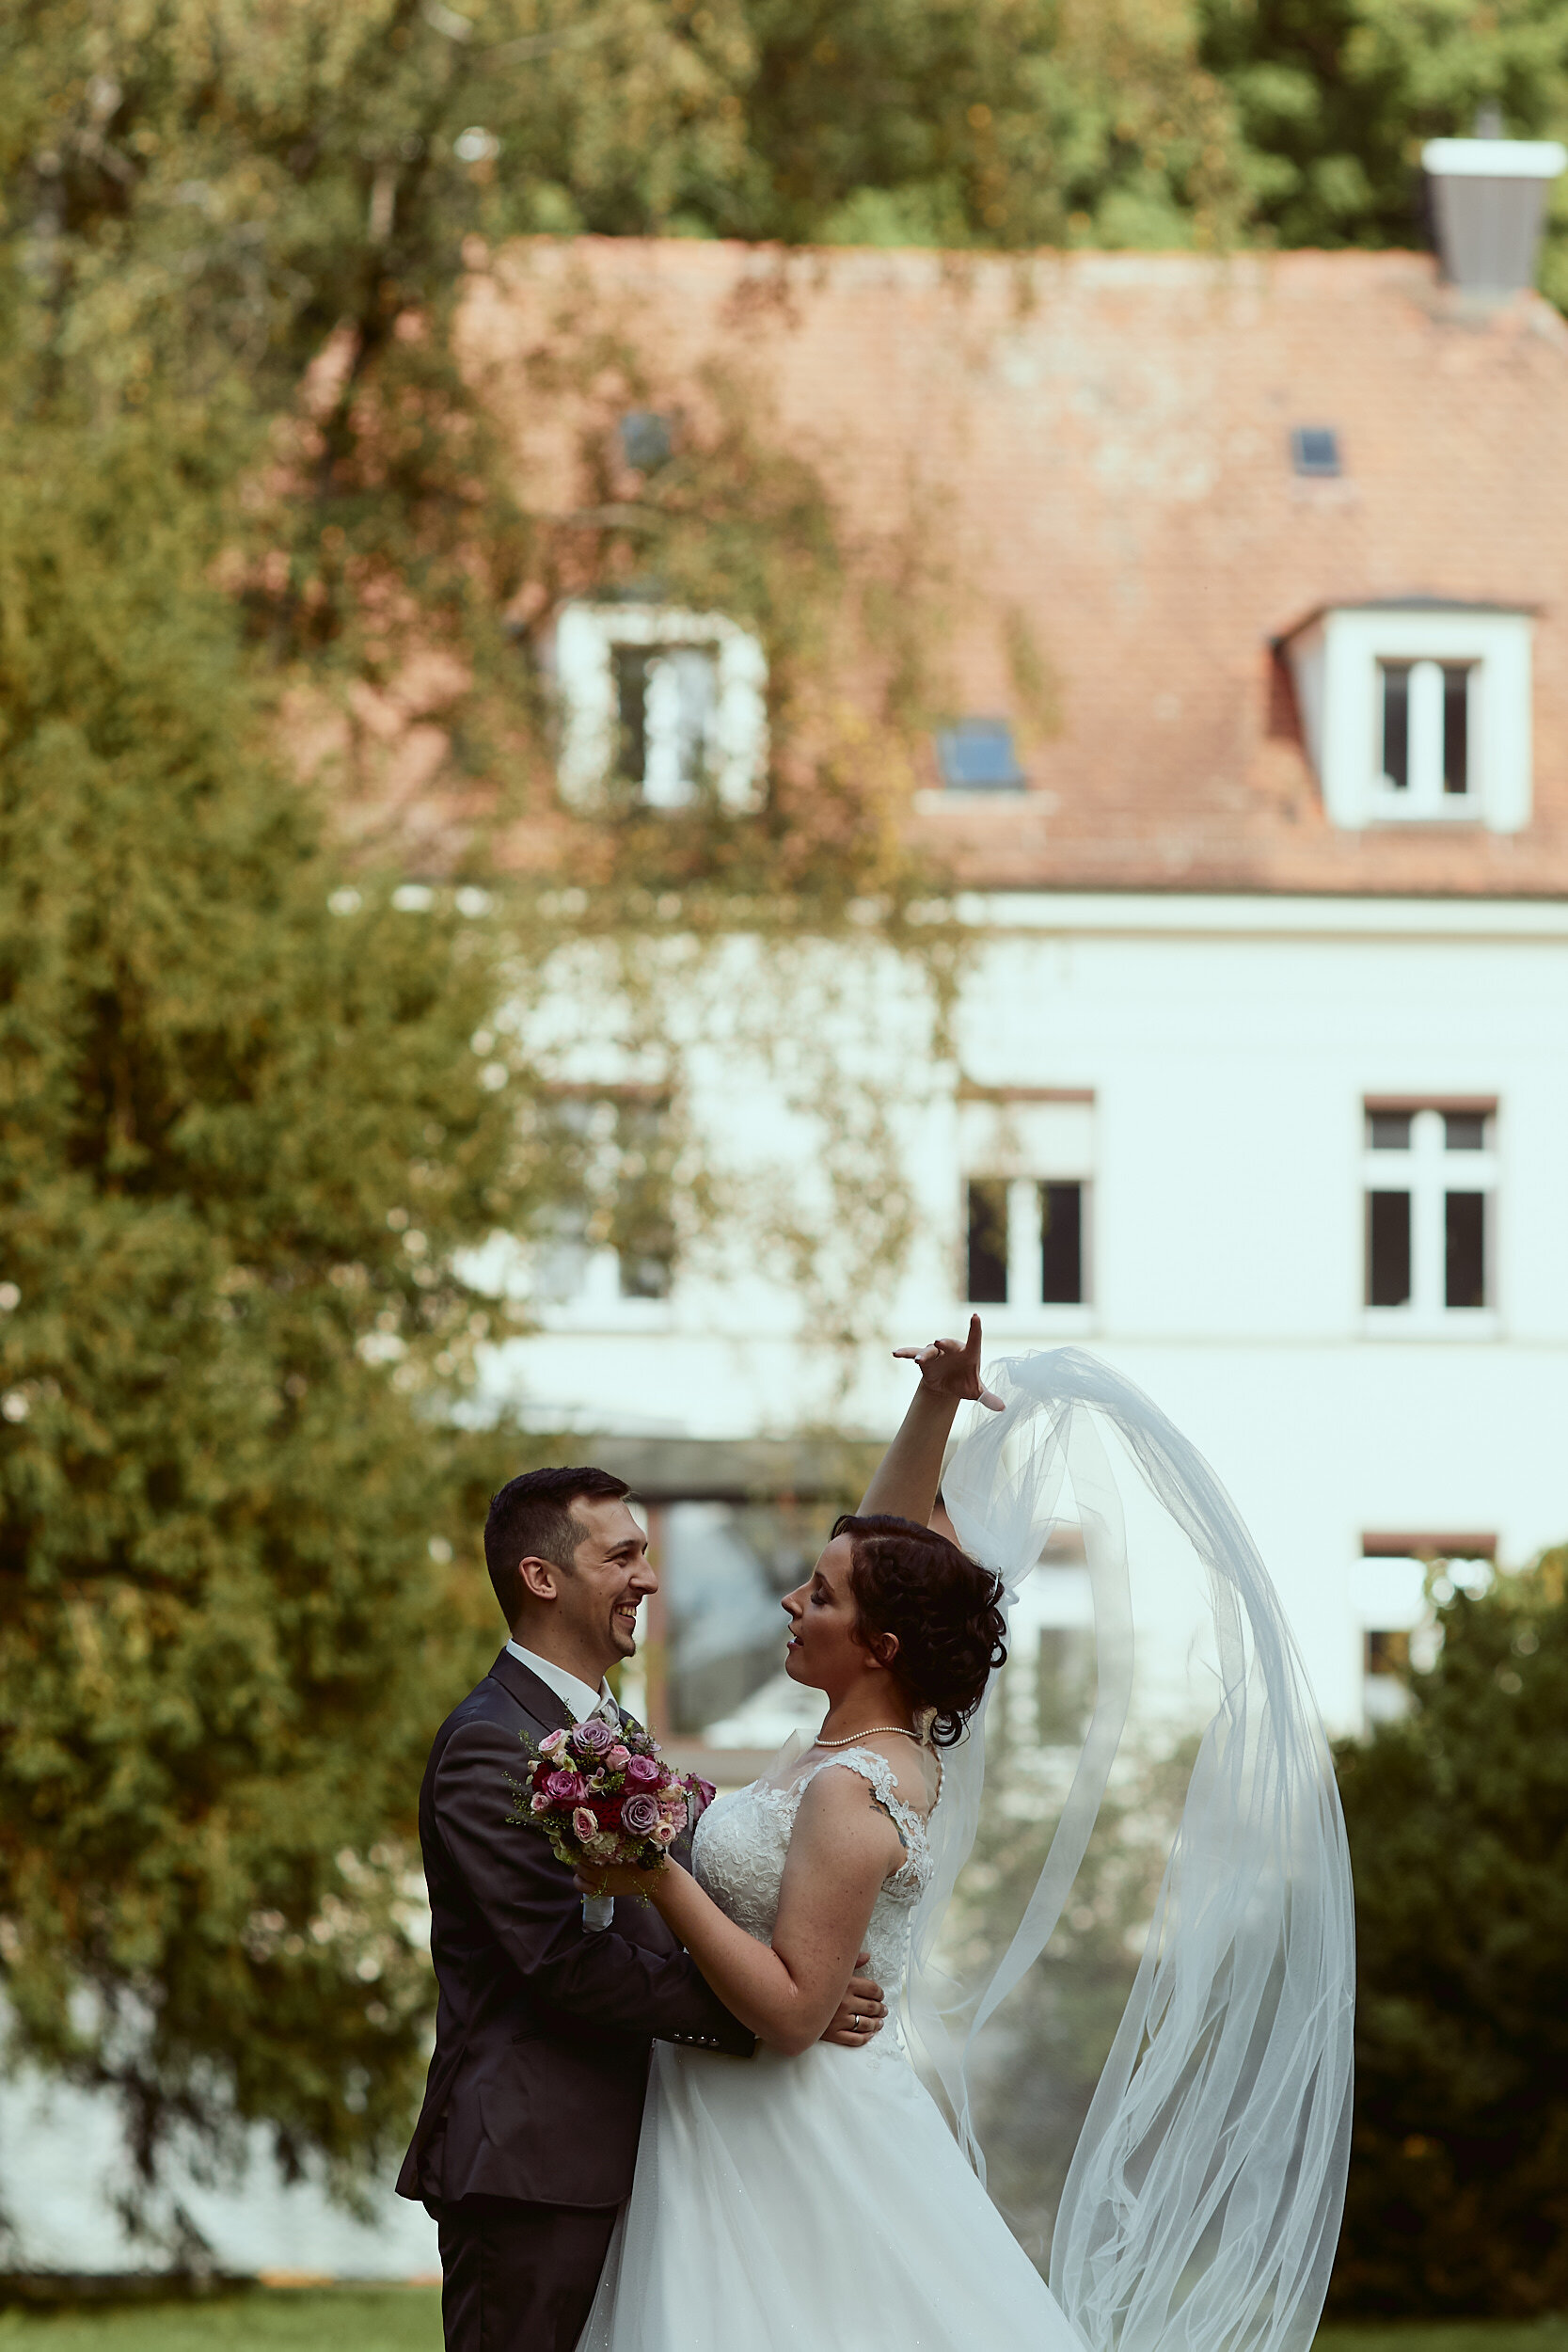 135 mm - 2019-09-14 15.52.41 - Sarah & Andreas Hochzeitsbilder_1.jpg